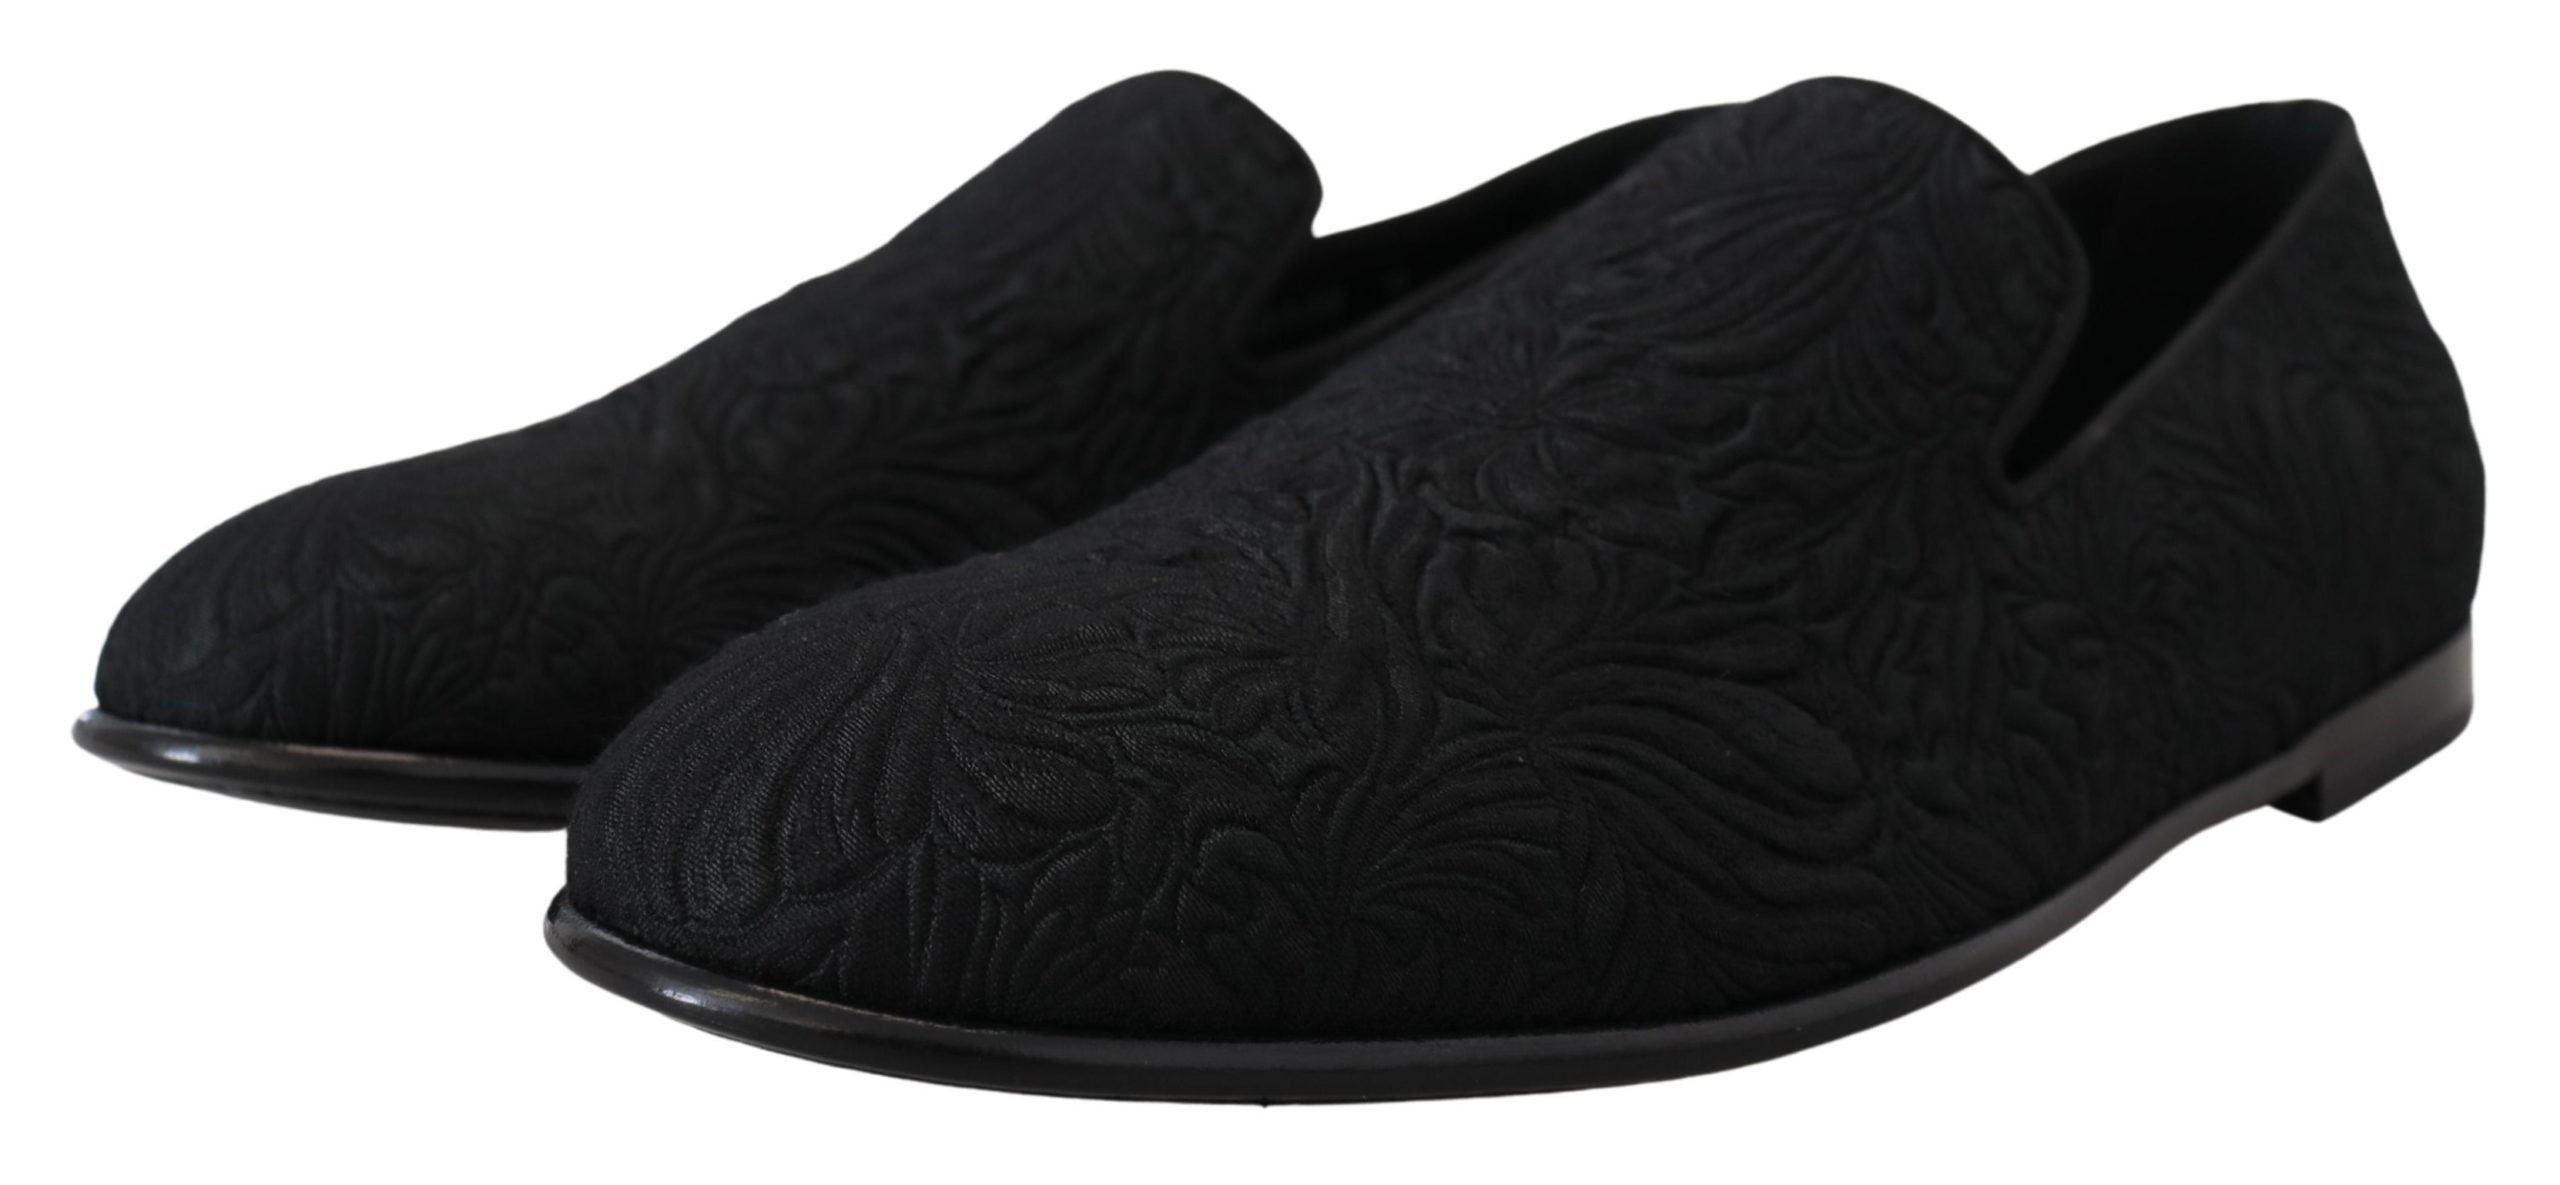 Dolce & Gabbana Elegant Jacquard Black Loafers Slide On Flats